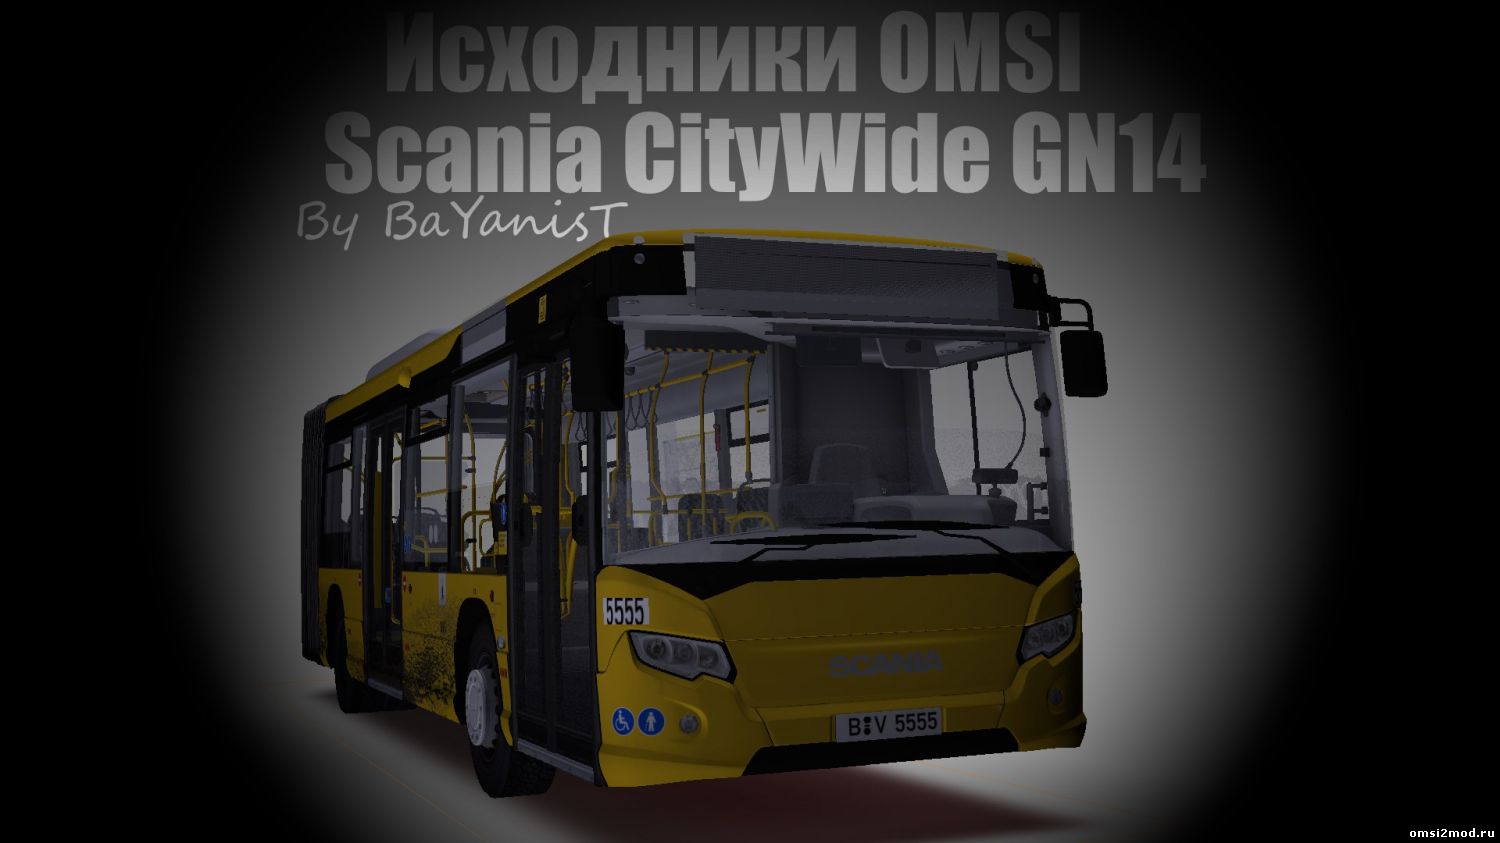 Исходник для Scania CityWide GN14